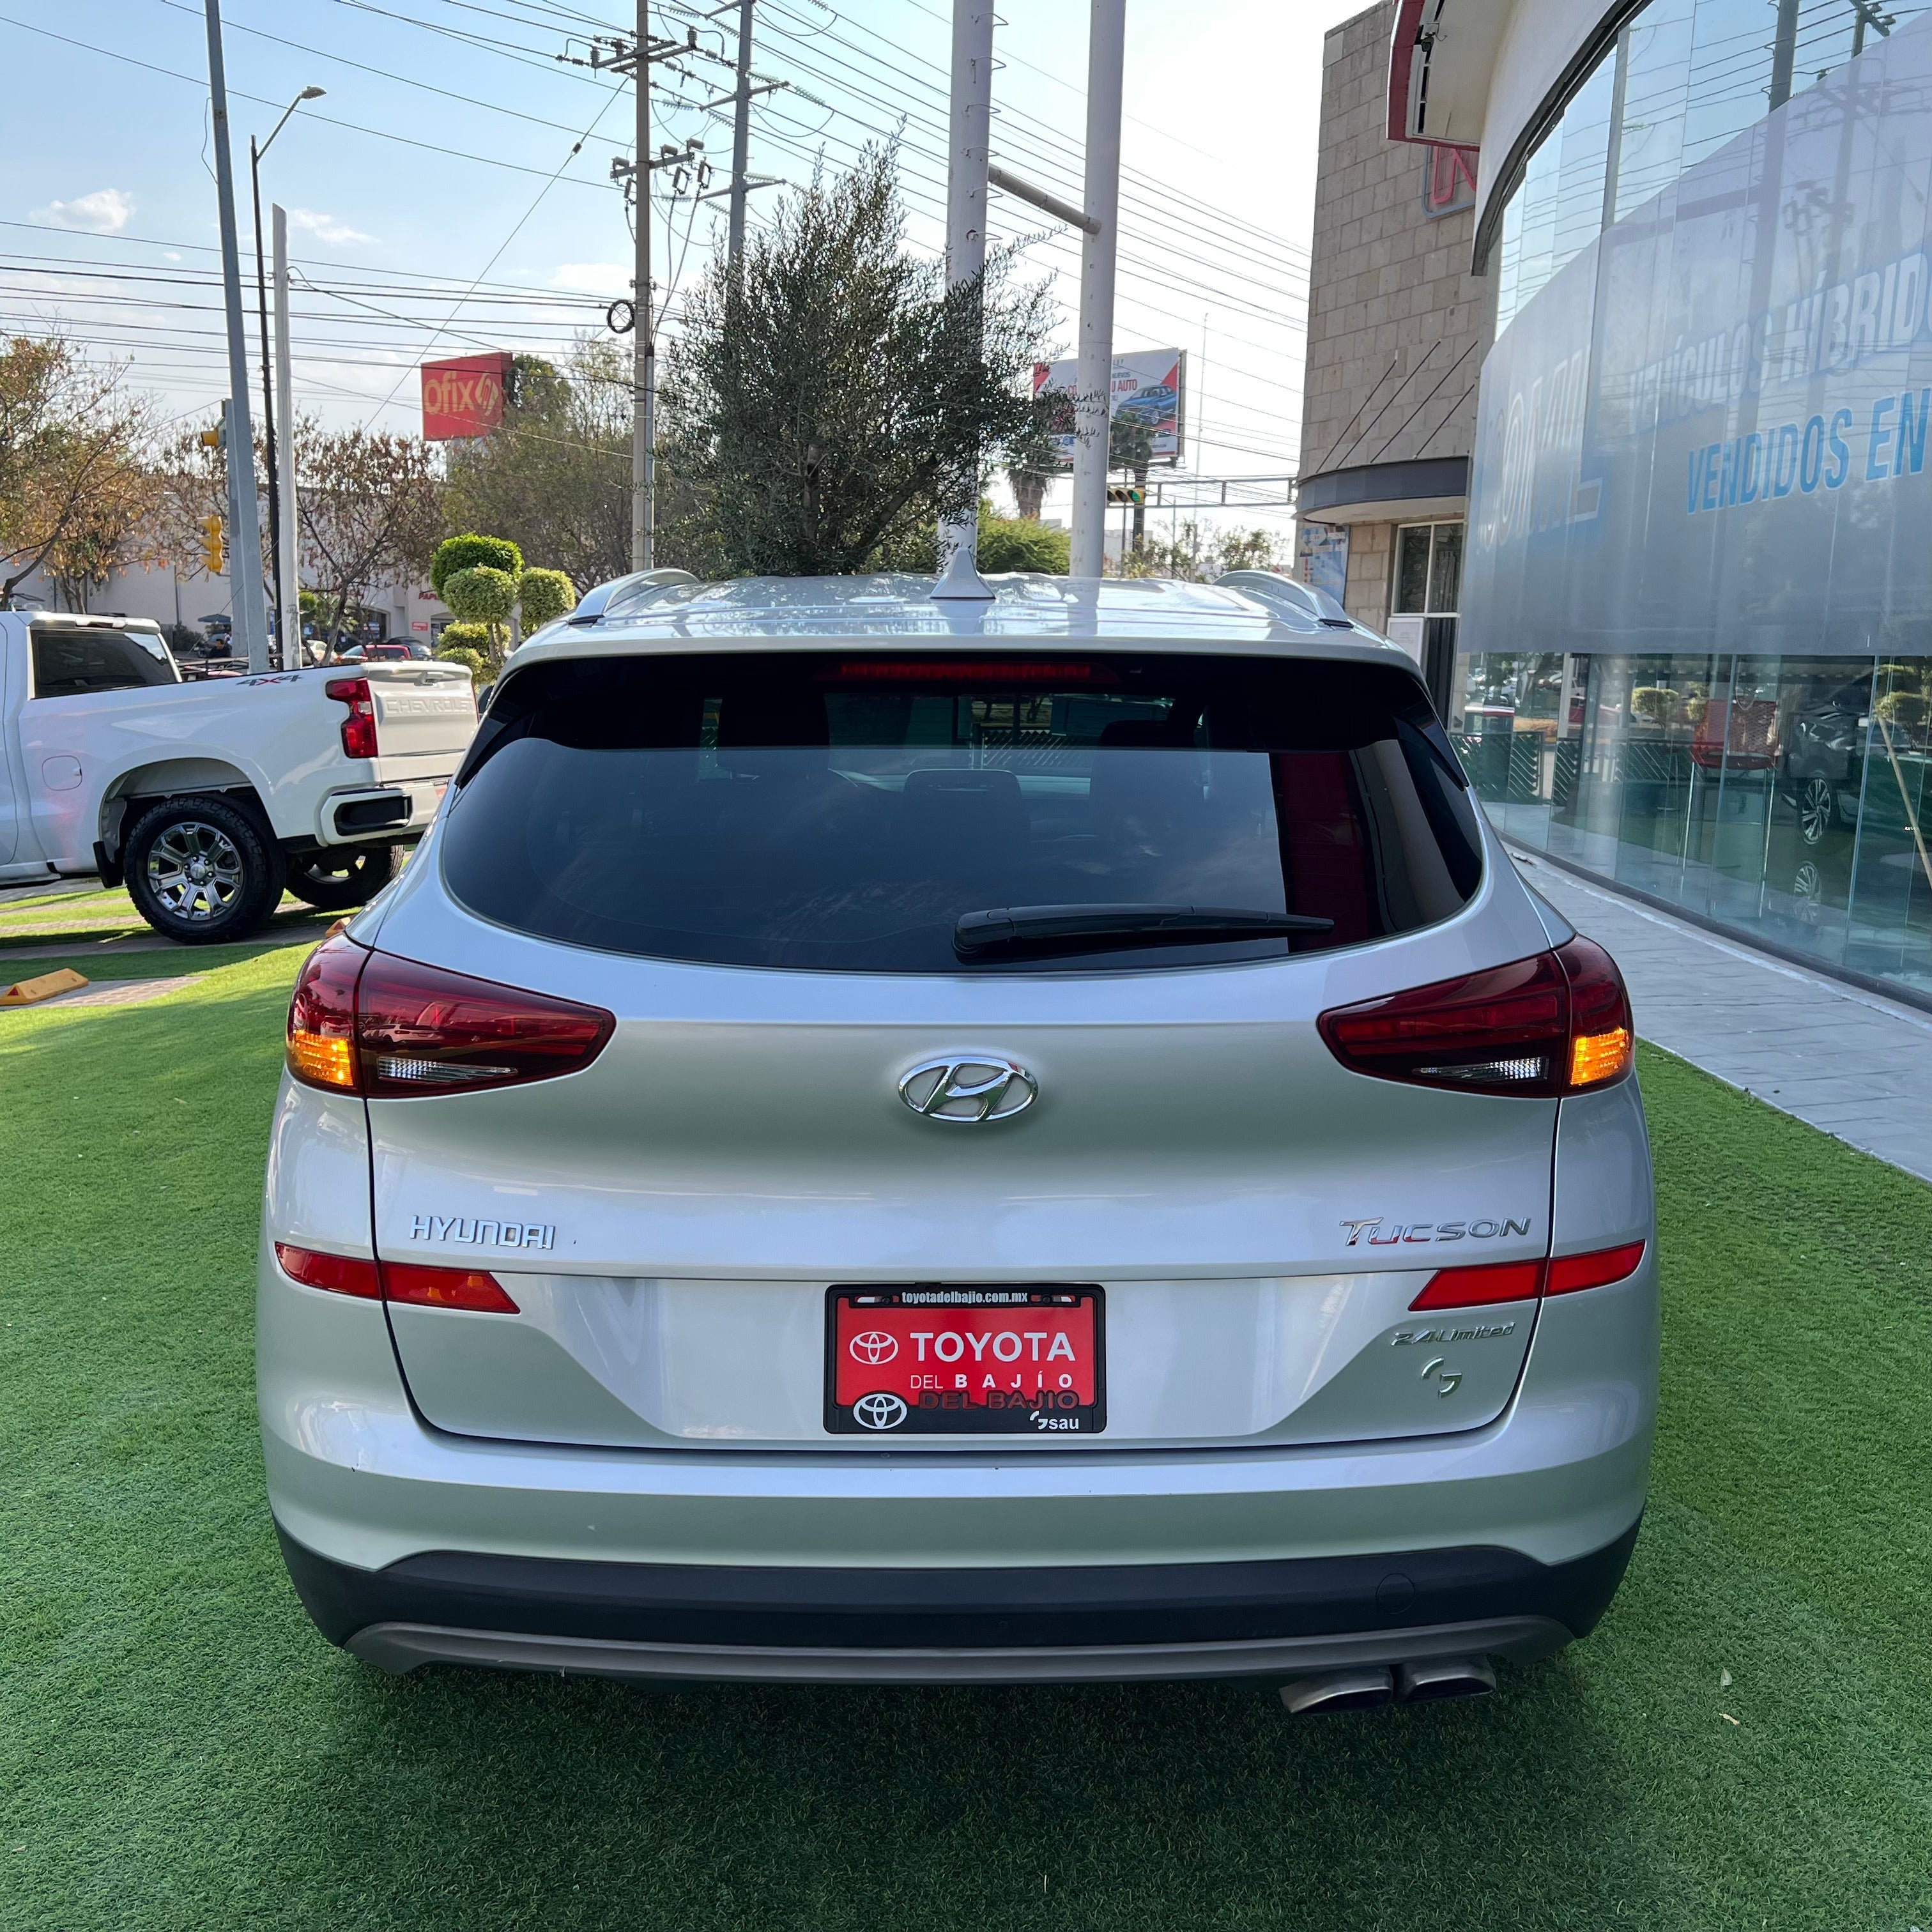 2019 Hyundai Tucson LIMITED L4 2.4L 155 CP 5 PUERTAS AUT PIEL BA AA